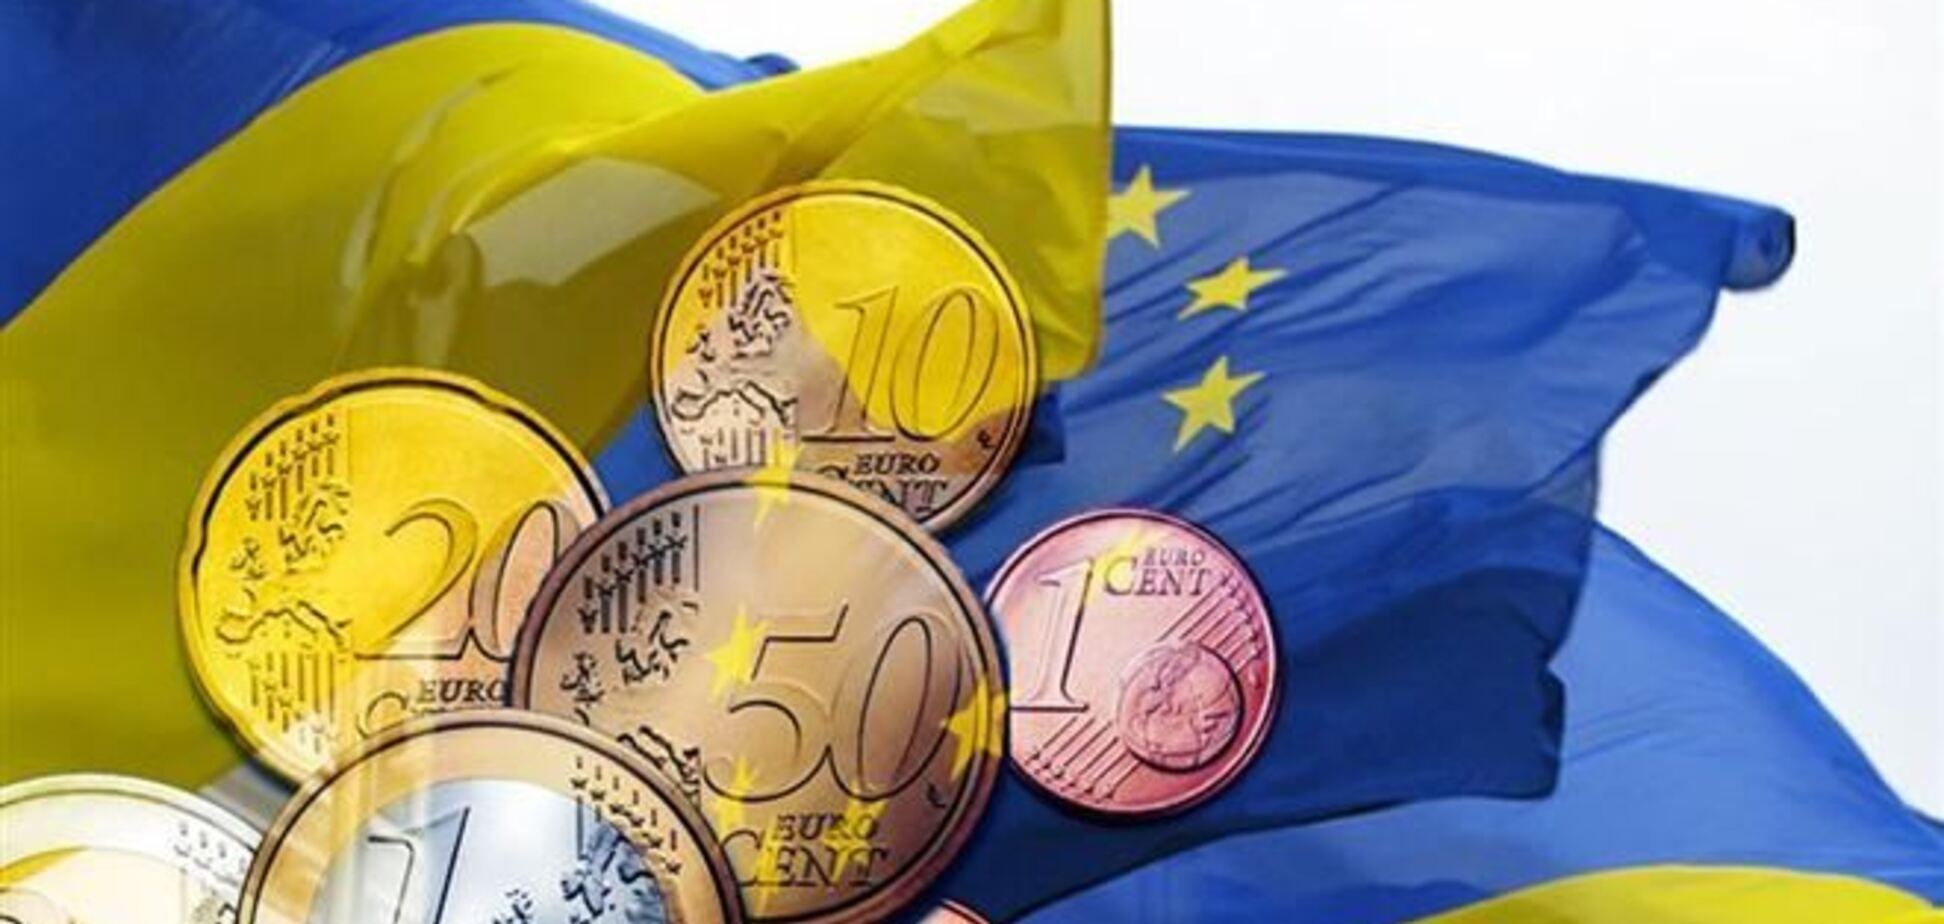 Украина до конца 2014 года подпишет экономическую часть ассоциации с ЕС - посол 